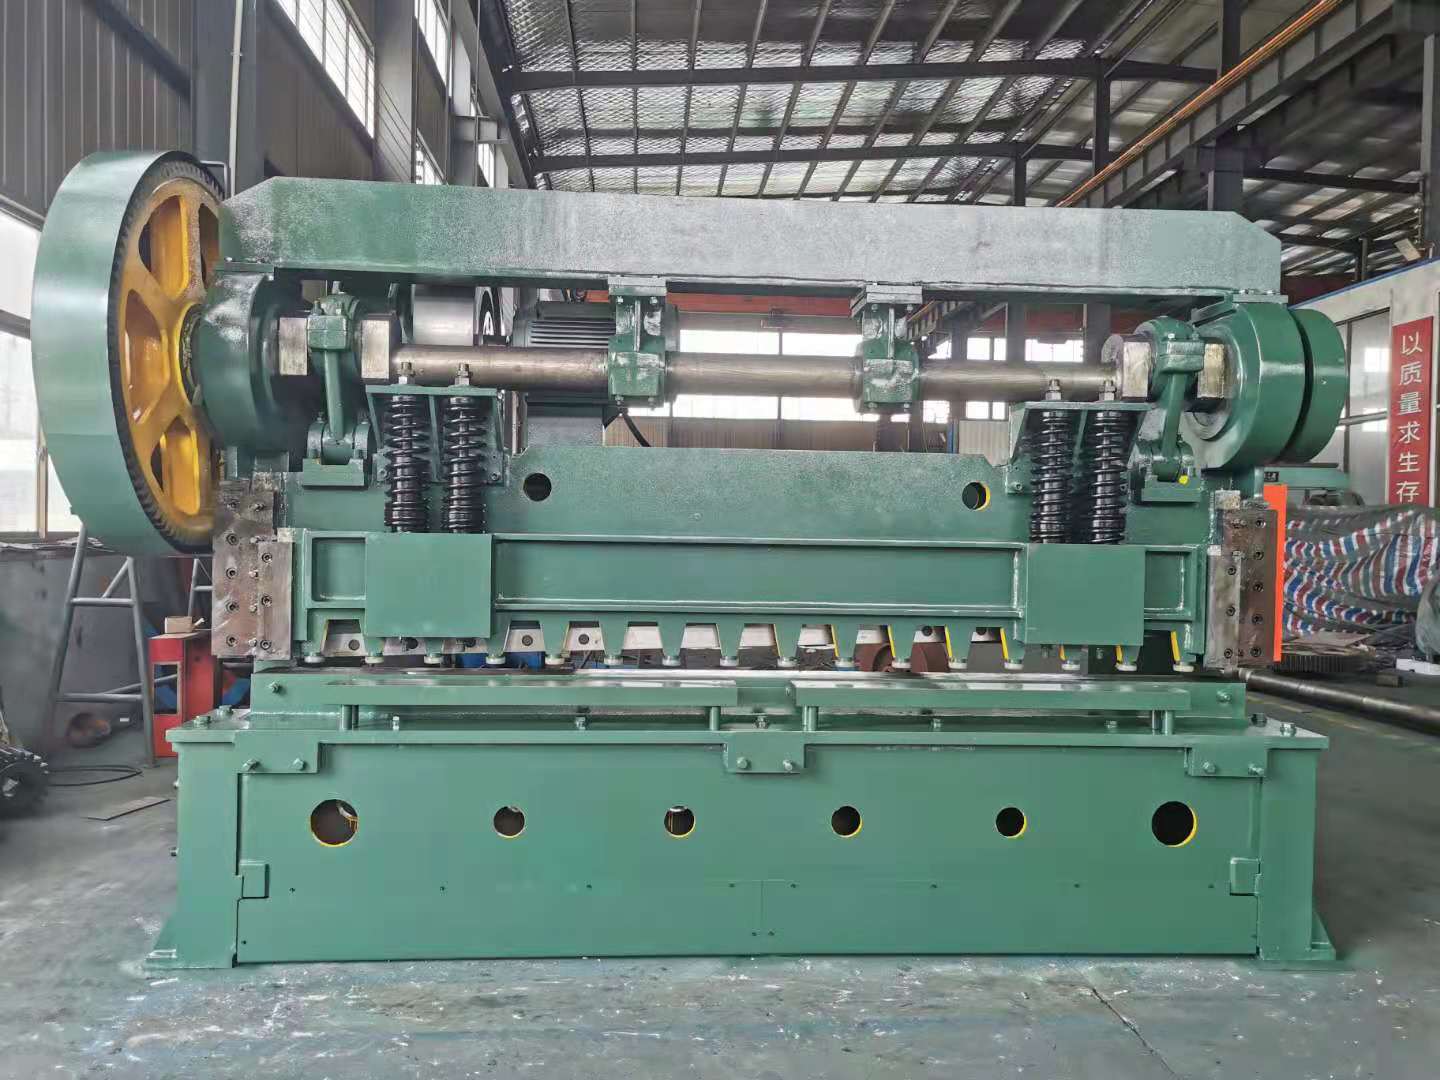 QH11- Large Mechanical Plate Shears Power Shearing Machine Hydraulic Metal Shearing Machine